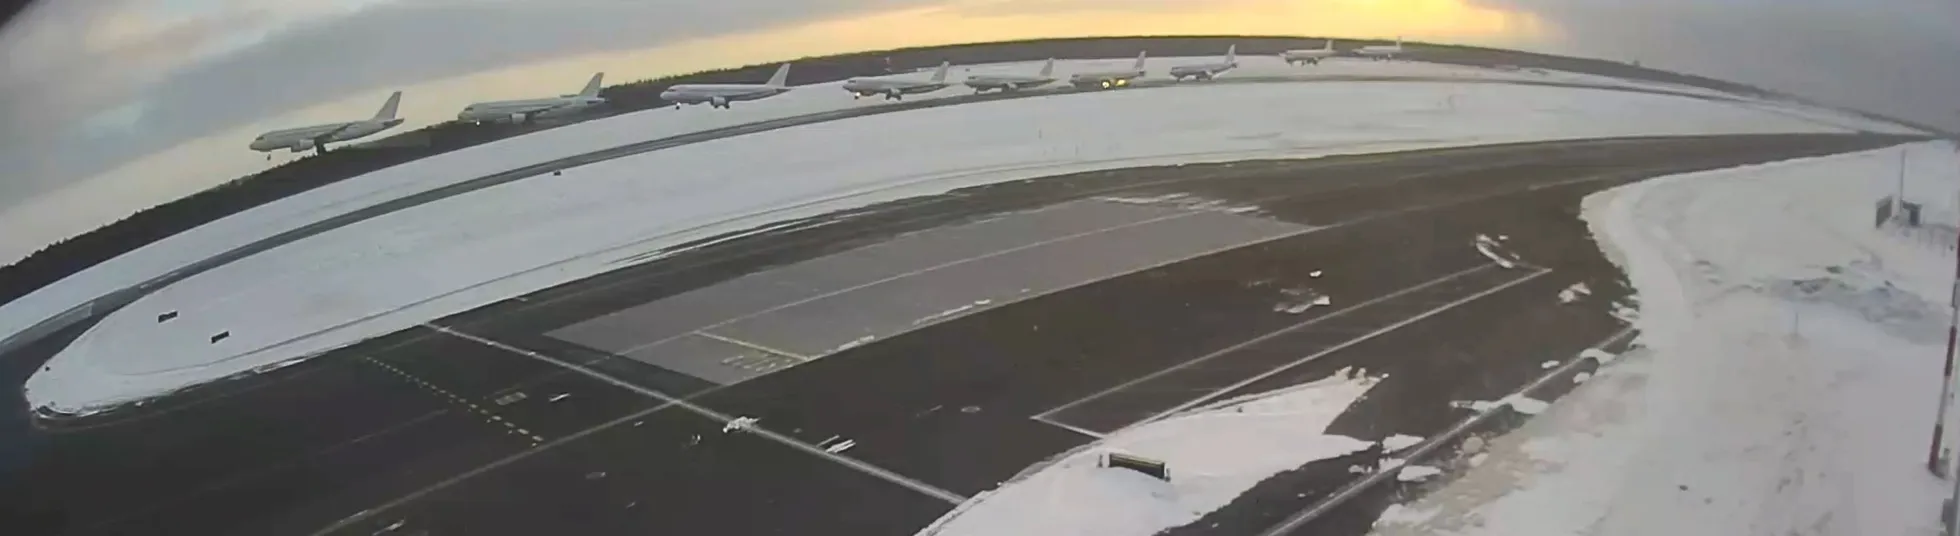 Скриншот с записи камеры видеонаблюдения, где видно падение самолета на взлетно-посадочную полосу.